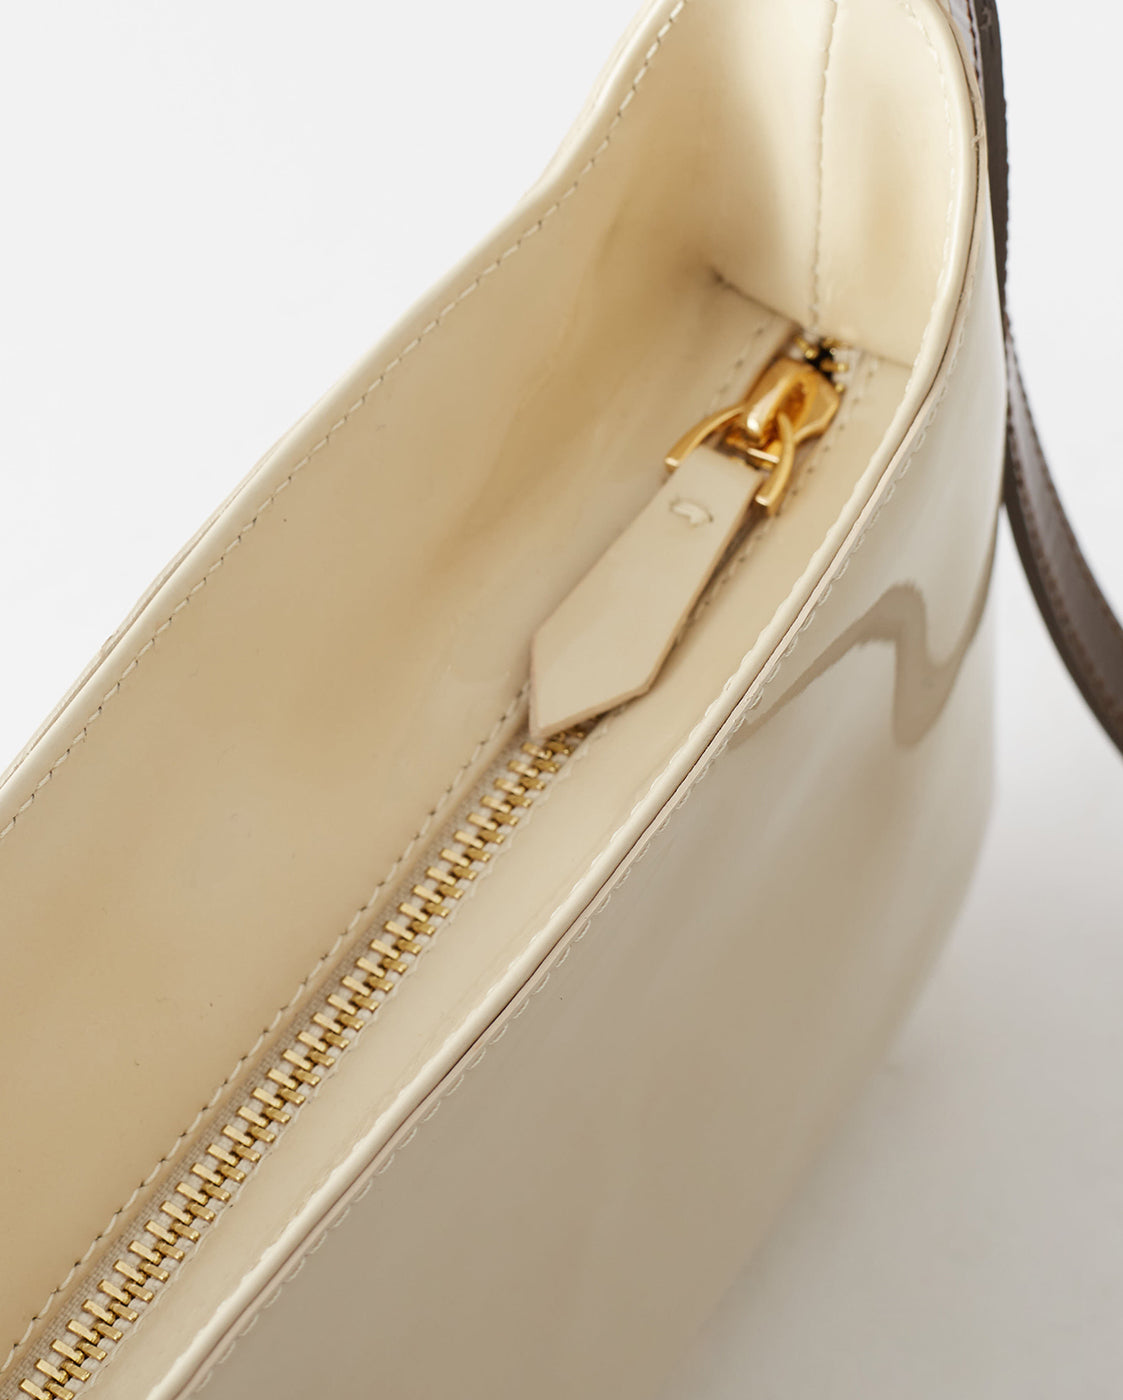 Cassie Bag Patent Leather Cream